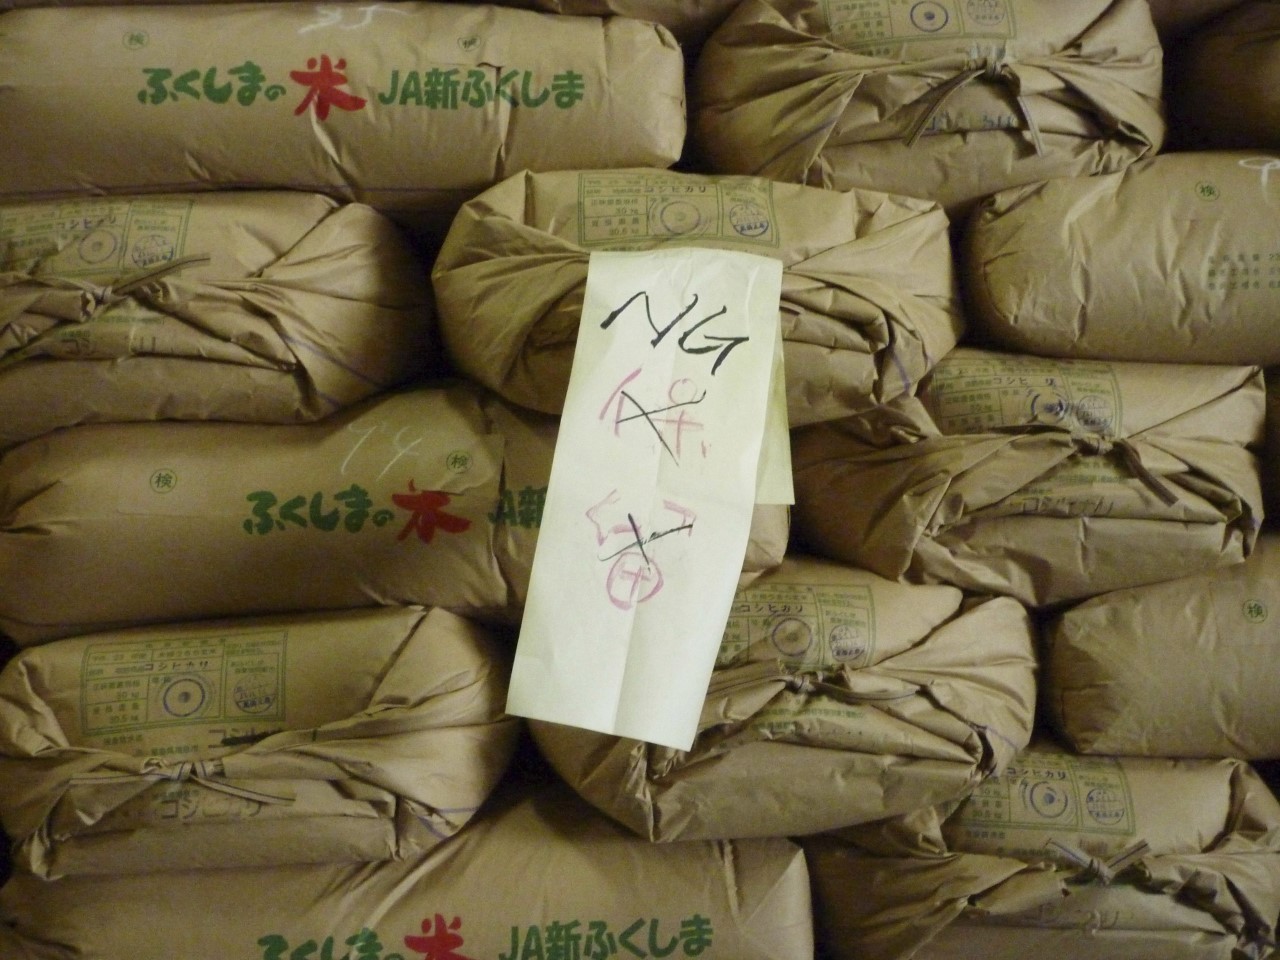 Un letrero indica que estos sacos de arroz de Fukushima no son aptos para el consumo